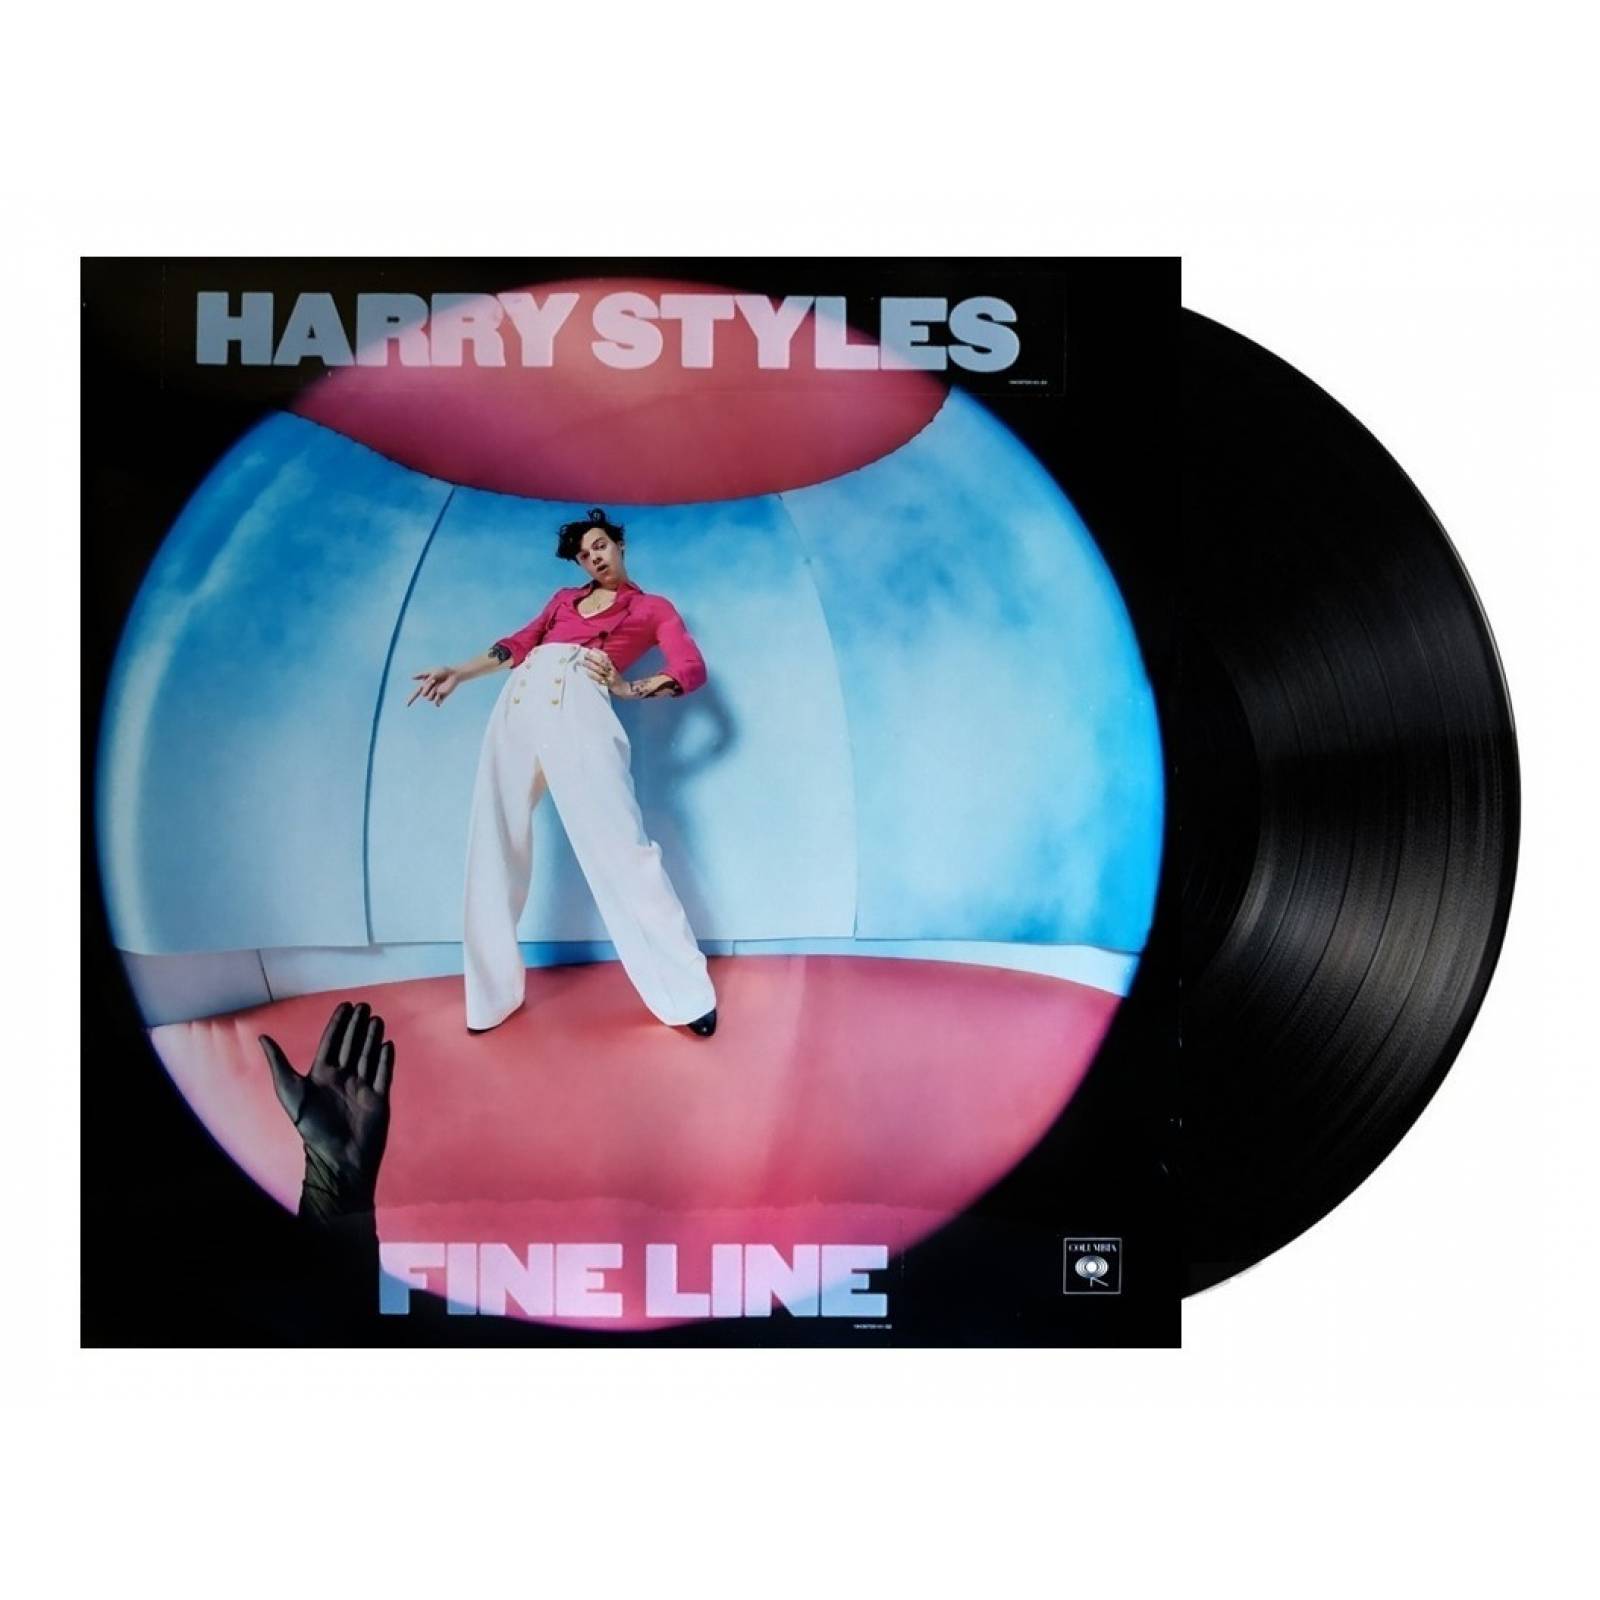 Harry Styles - Fine Line Vinilo Edición Limitada Importado